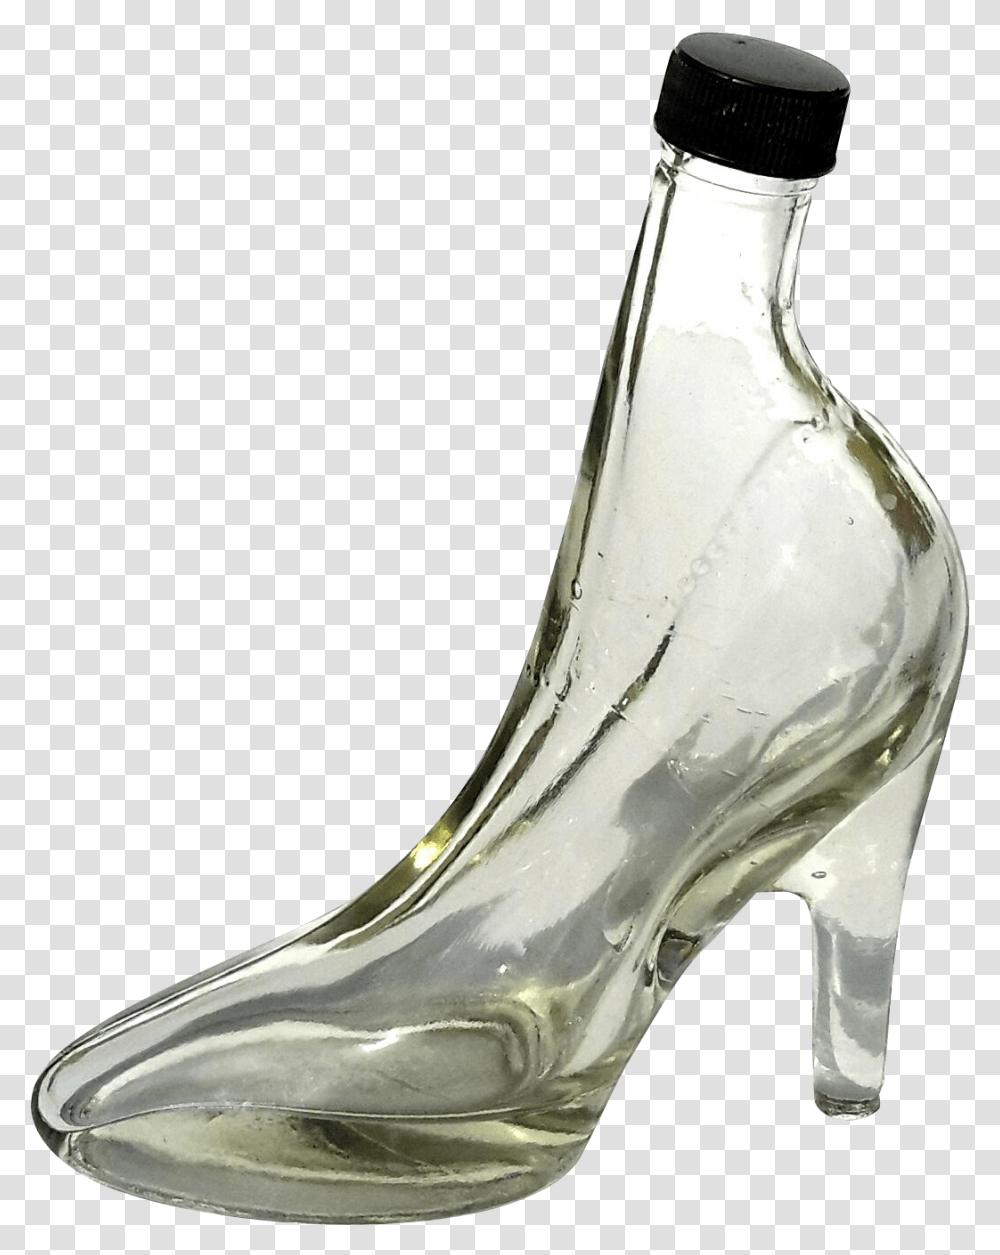 Glass Bottle Slipper High Heeled Shoe Shoe Glass, Apparel, Footwear, Bird Transparent Png